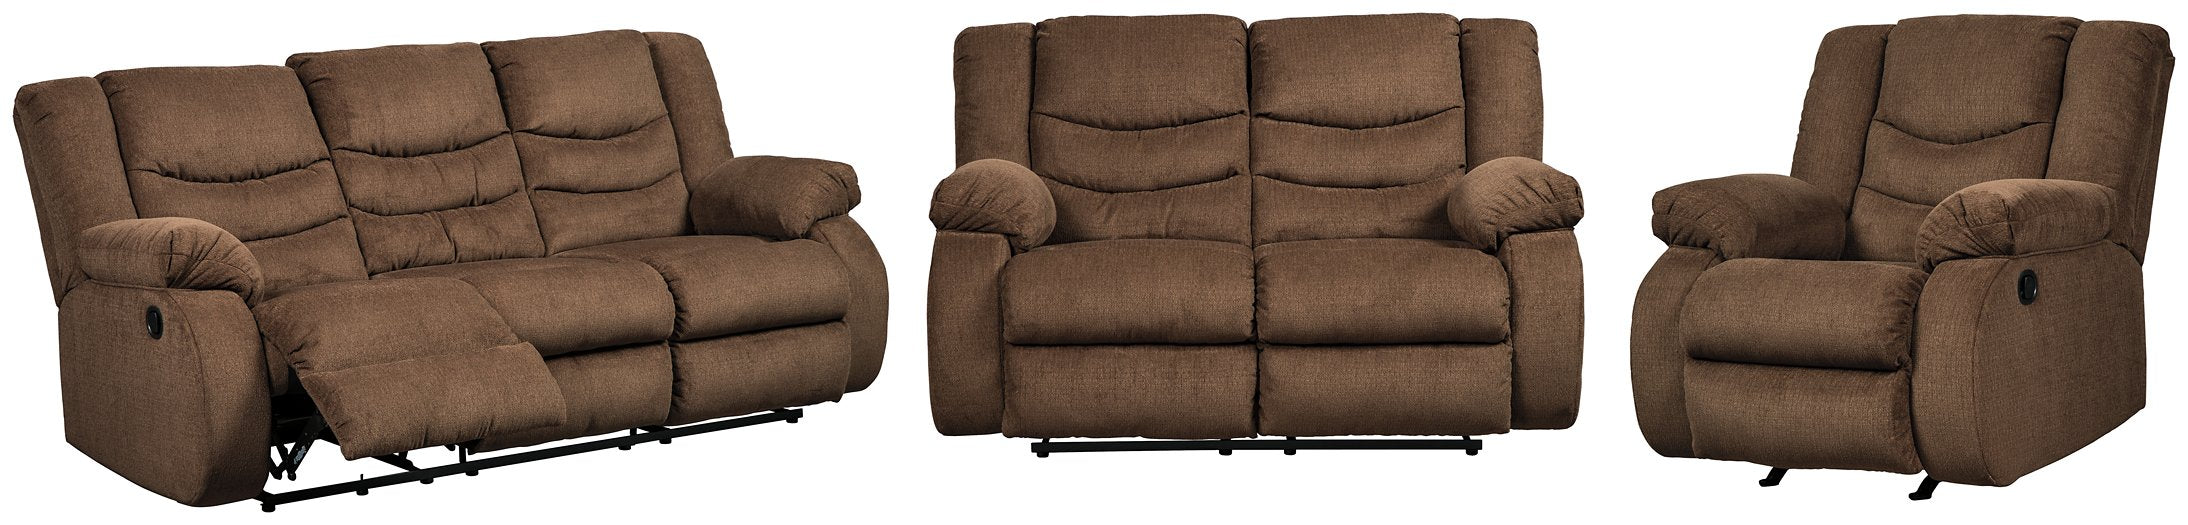 Tulen Living Room Set - Evans Furniture (CO)